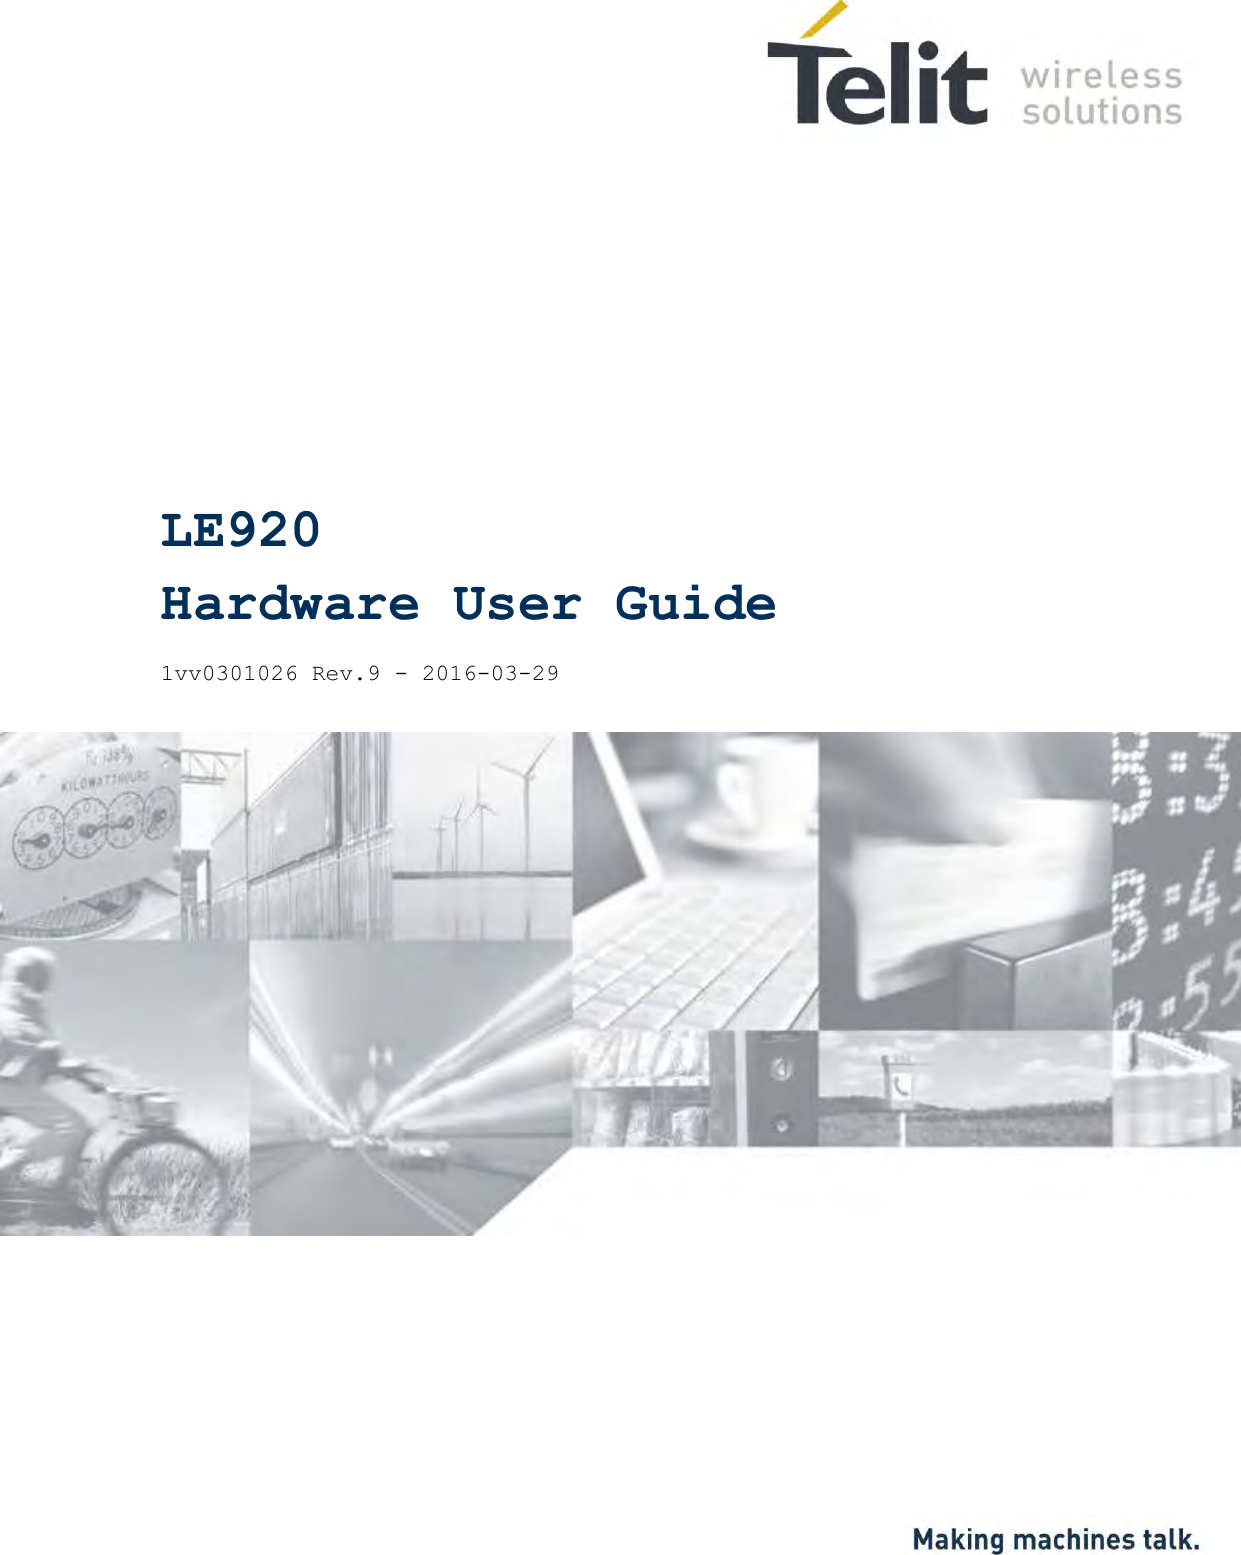                     LE920 Hardware User Guide  1vv0301026 Rev.9 - 2016-03-29  